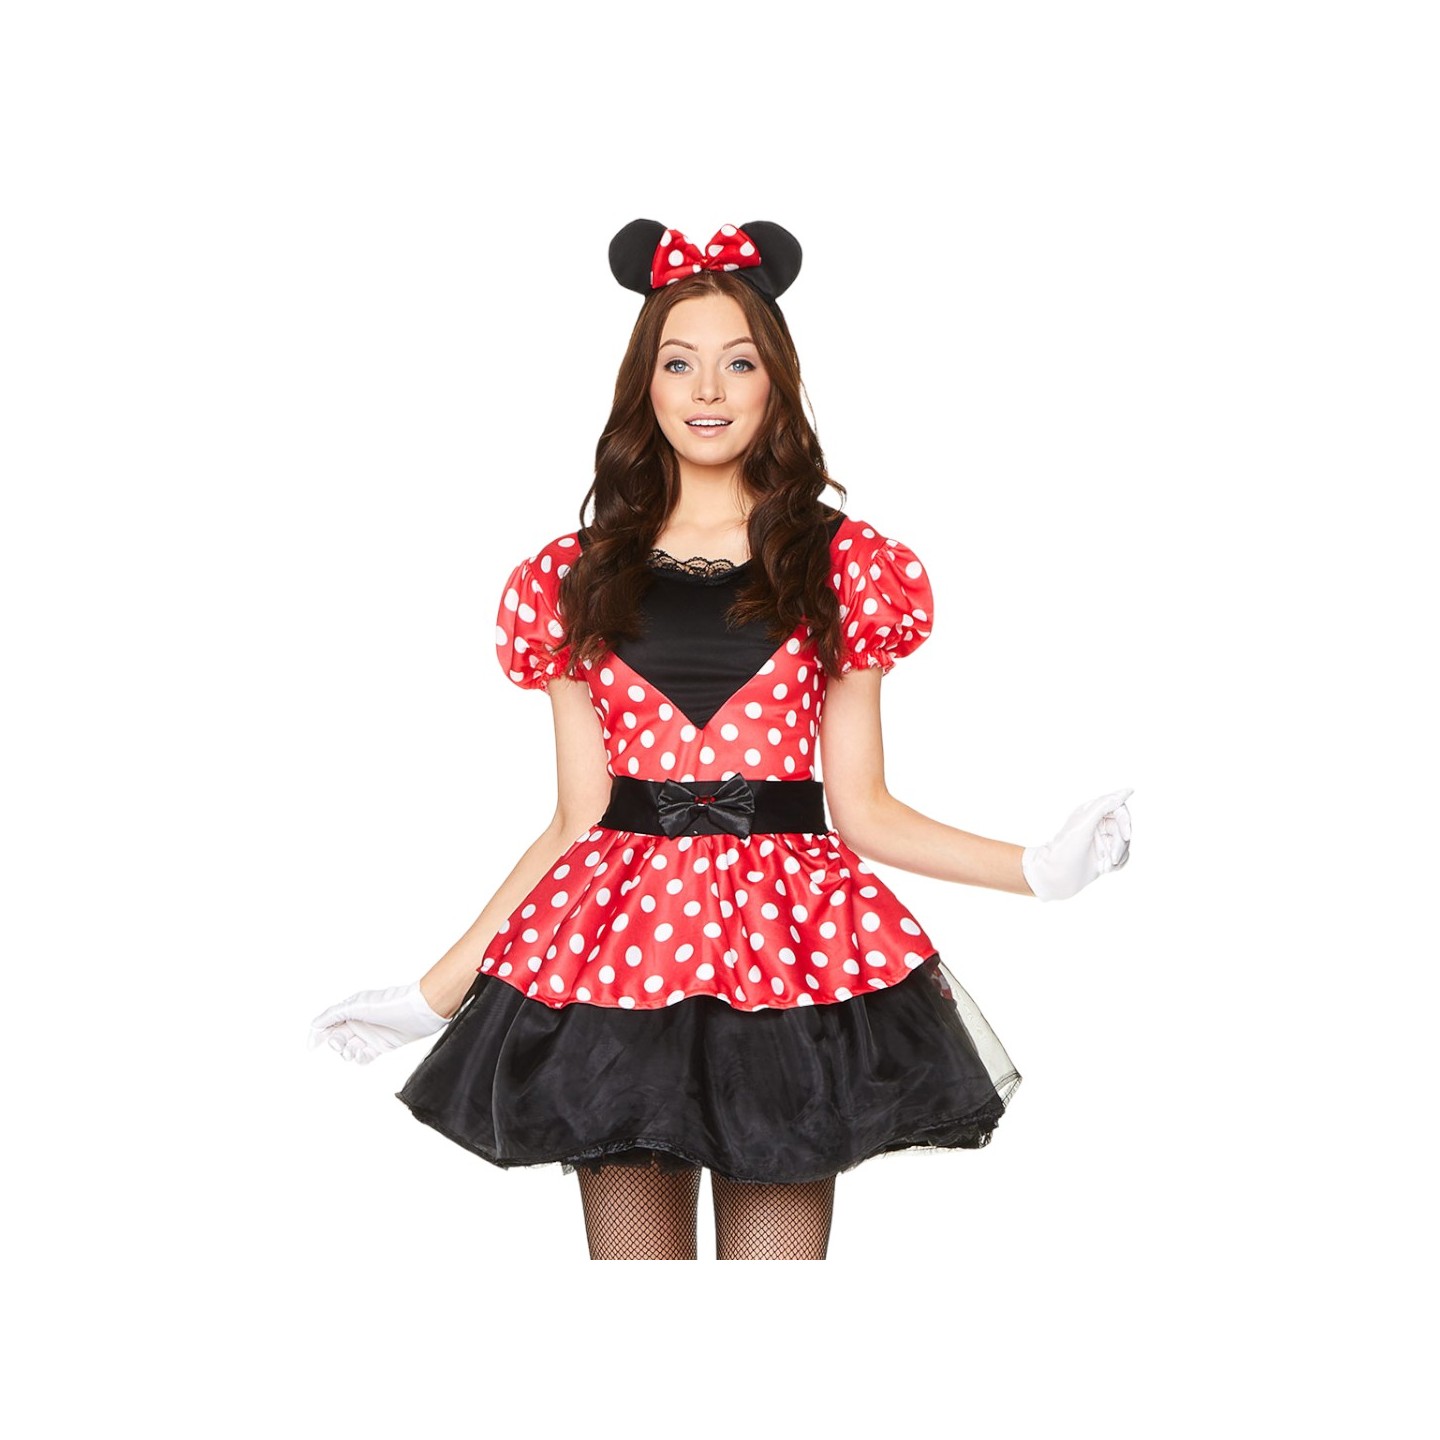 ik ben gelukkig kapperszaak Teleurgesteld Minnie mouse jurk dames (lookalike)| Jokershop.be - Disney kleding